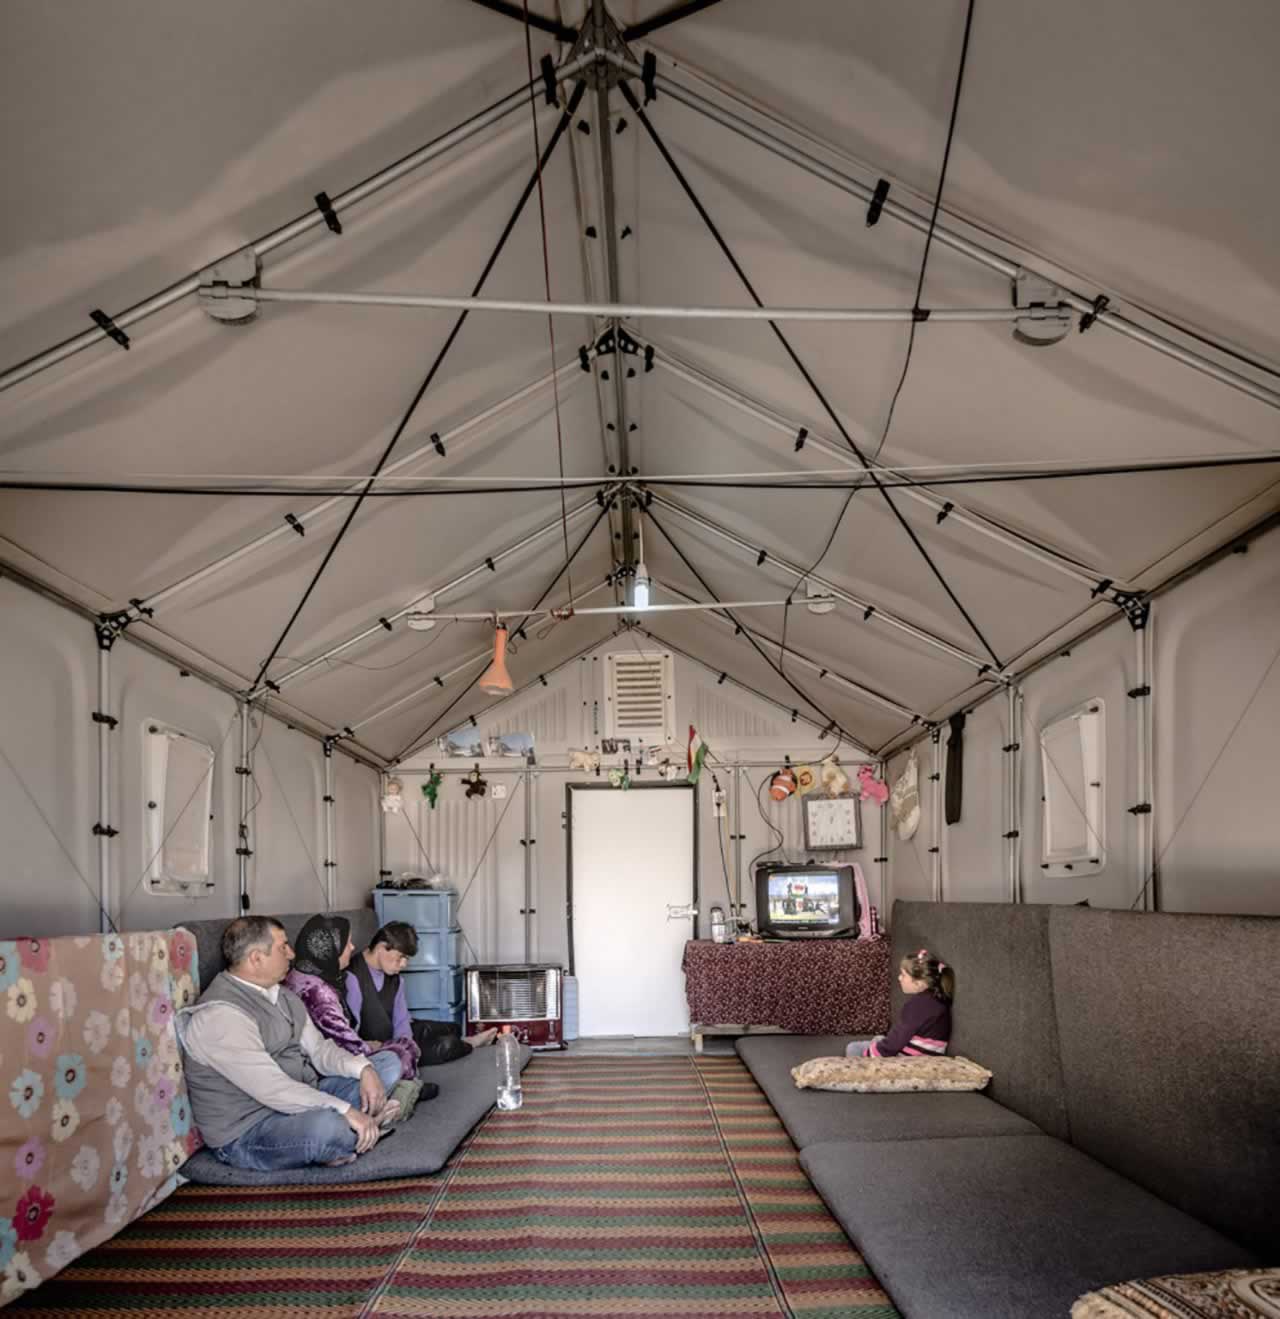 Mindeközben a menekült táborokban – Napelem-forradalom